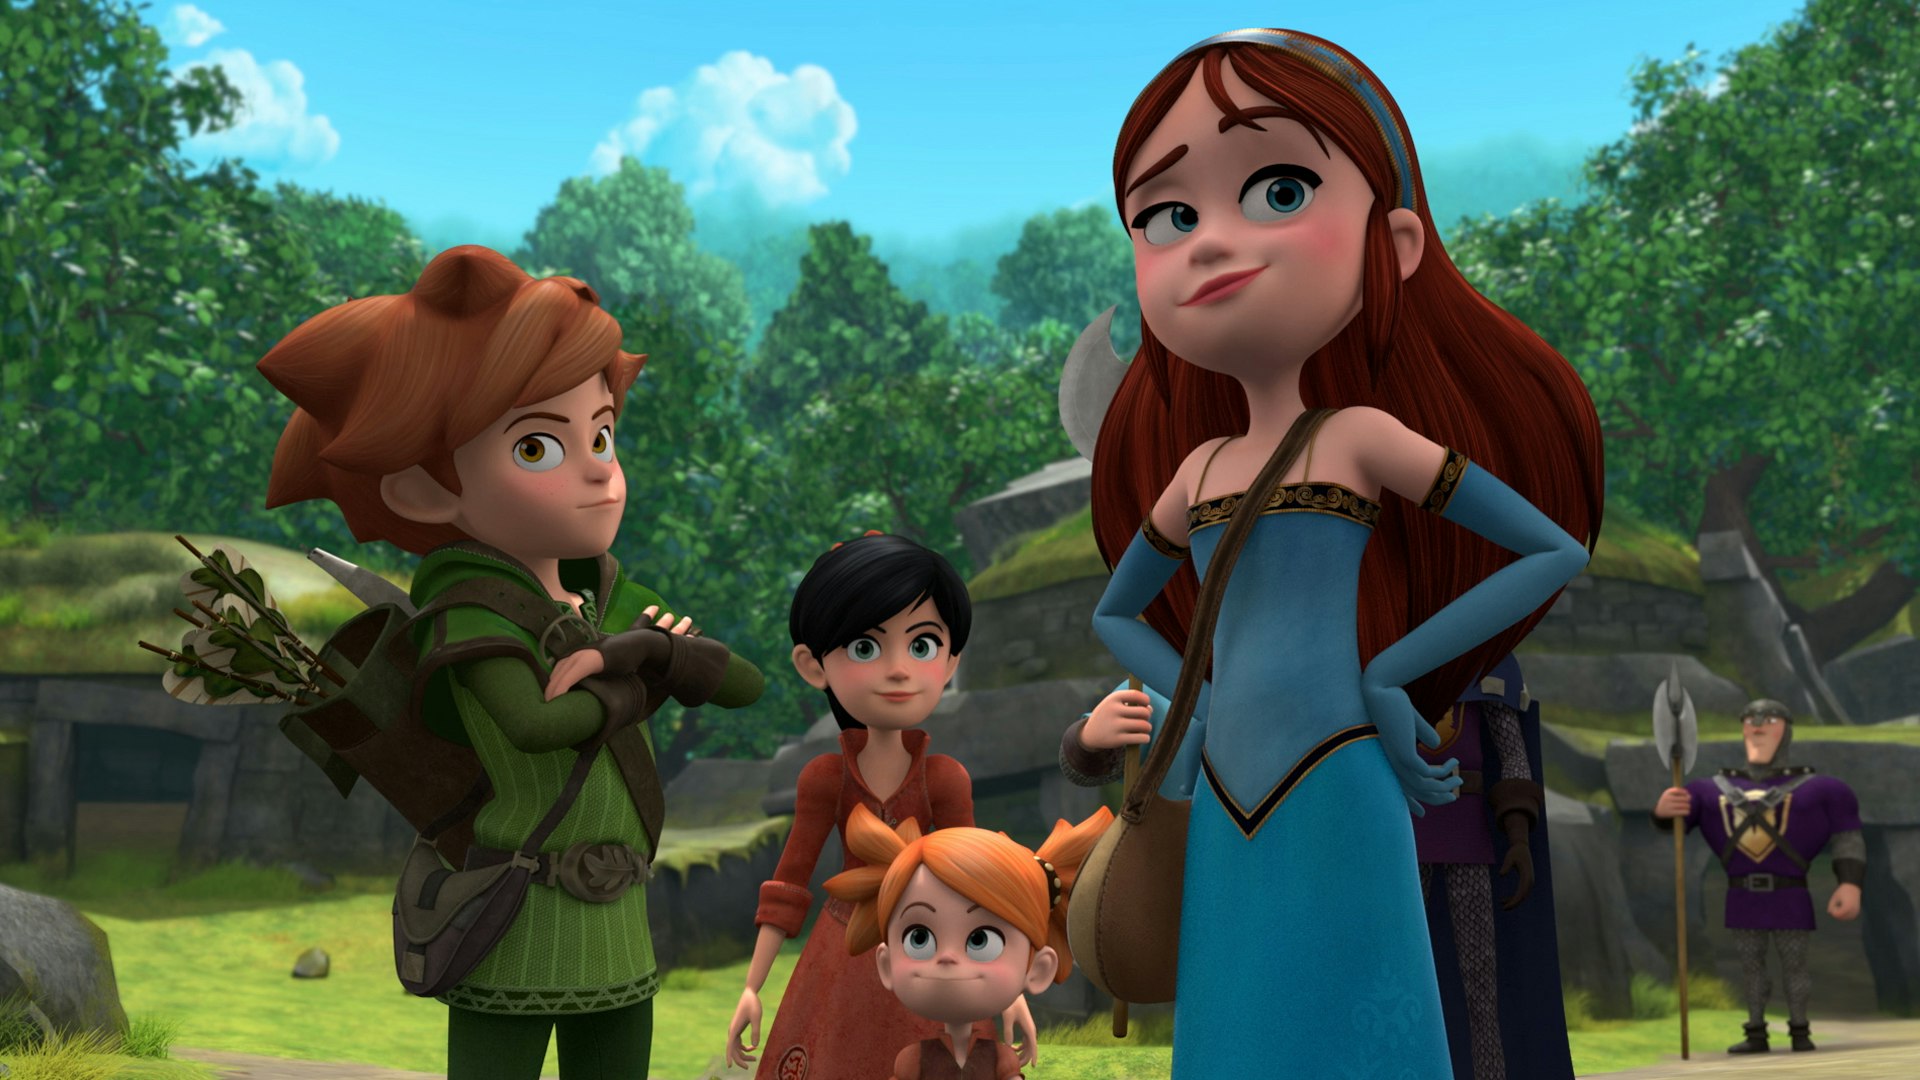 Robin Hood: Mischief in Sherwood TV Review